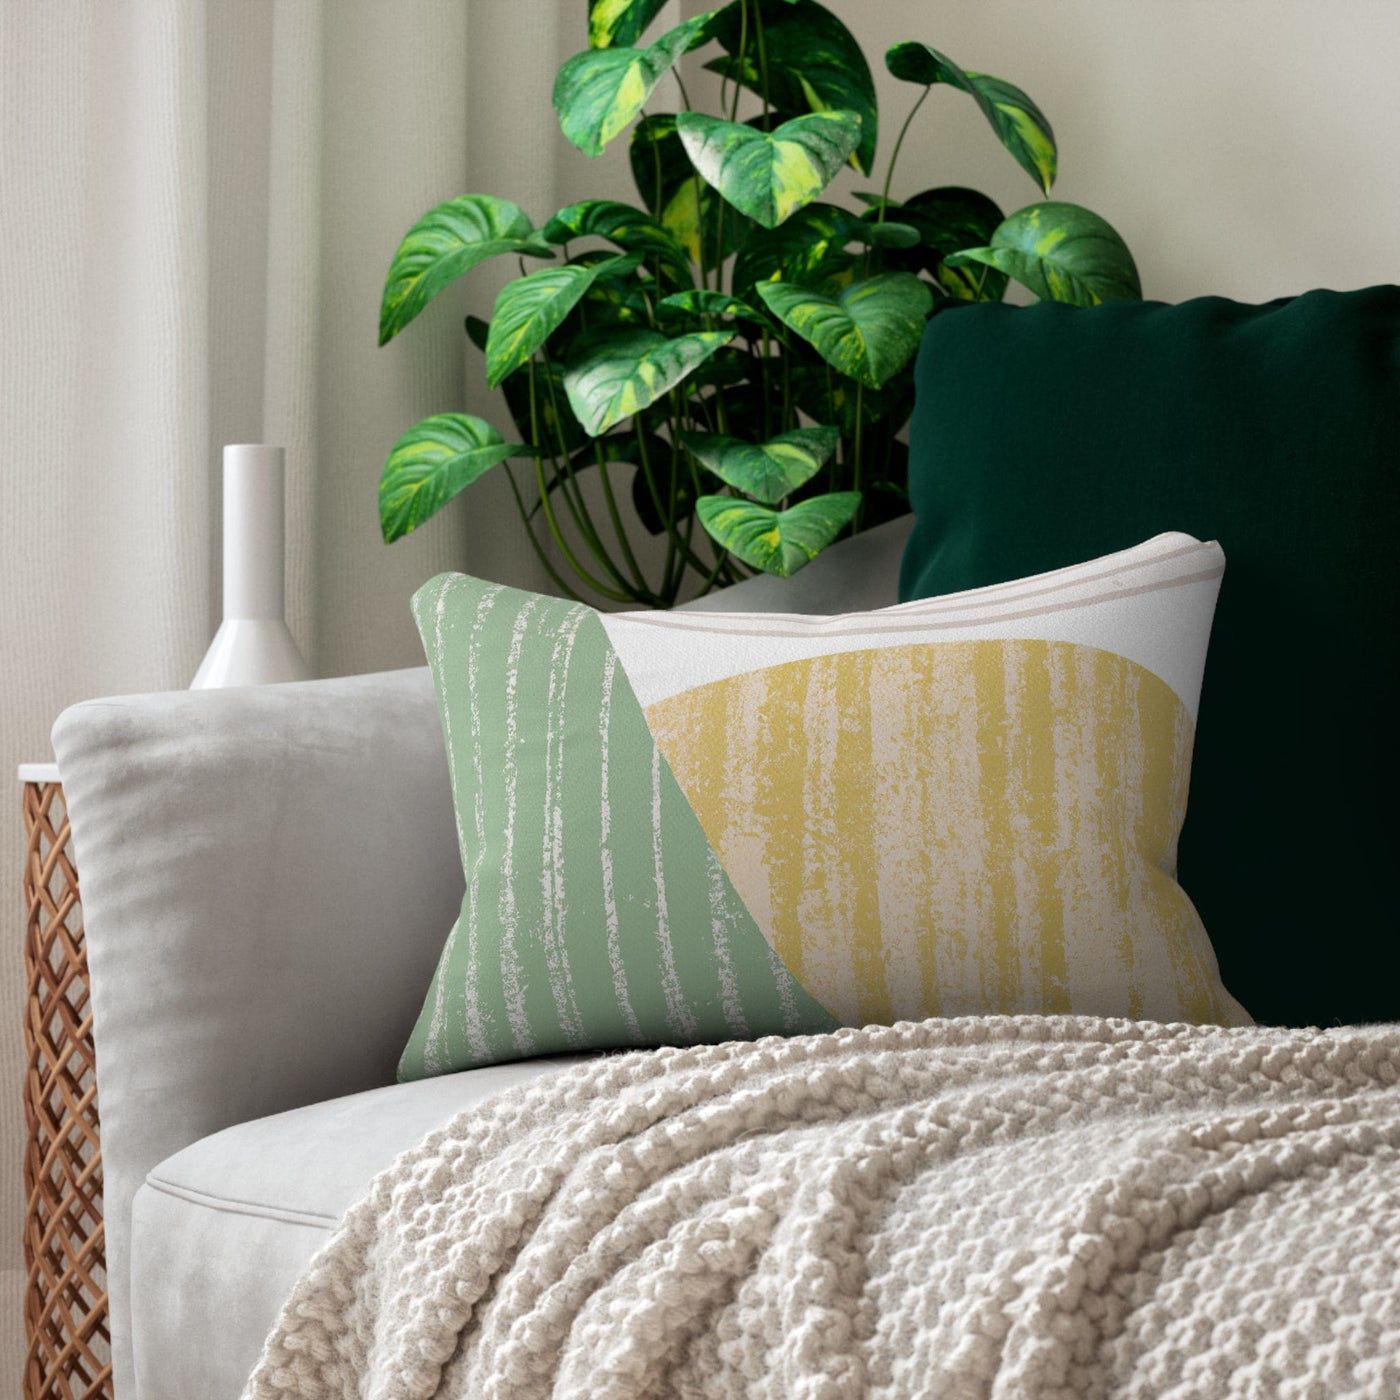 Decorative Lumbar Throw Pillow - Mint Green Textured Look Boho Print